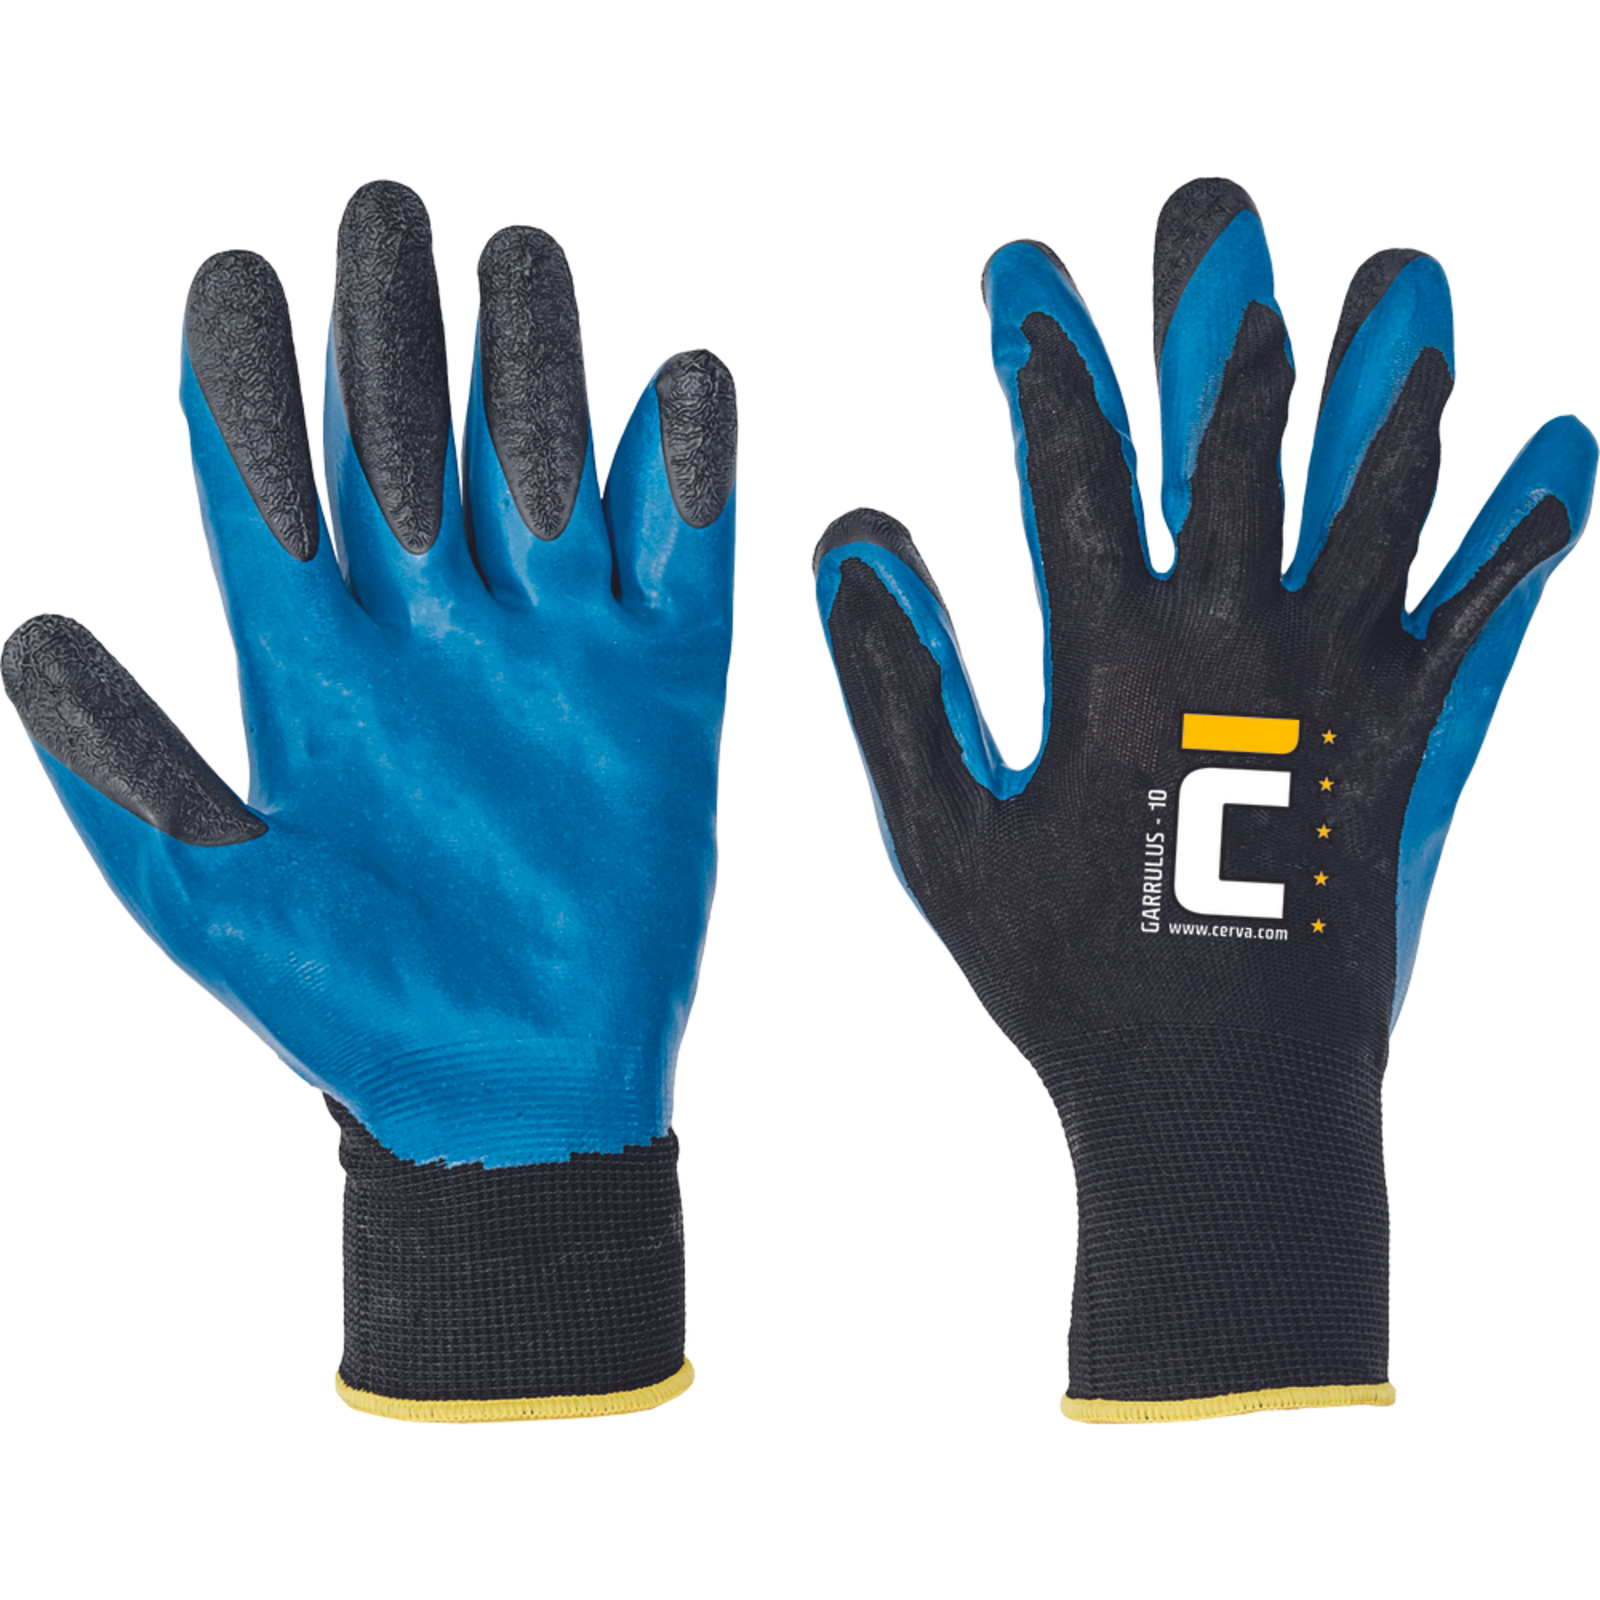 Pracovné rukavice Cerva Garrulus, mechanické - univerzálne, máčané latex - veľkosť: 8/M, farba: modrá/čierna